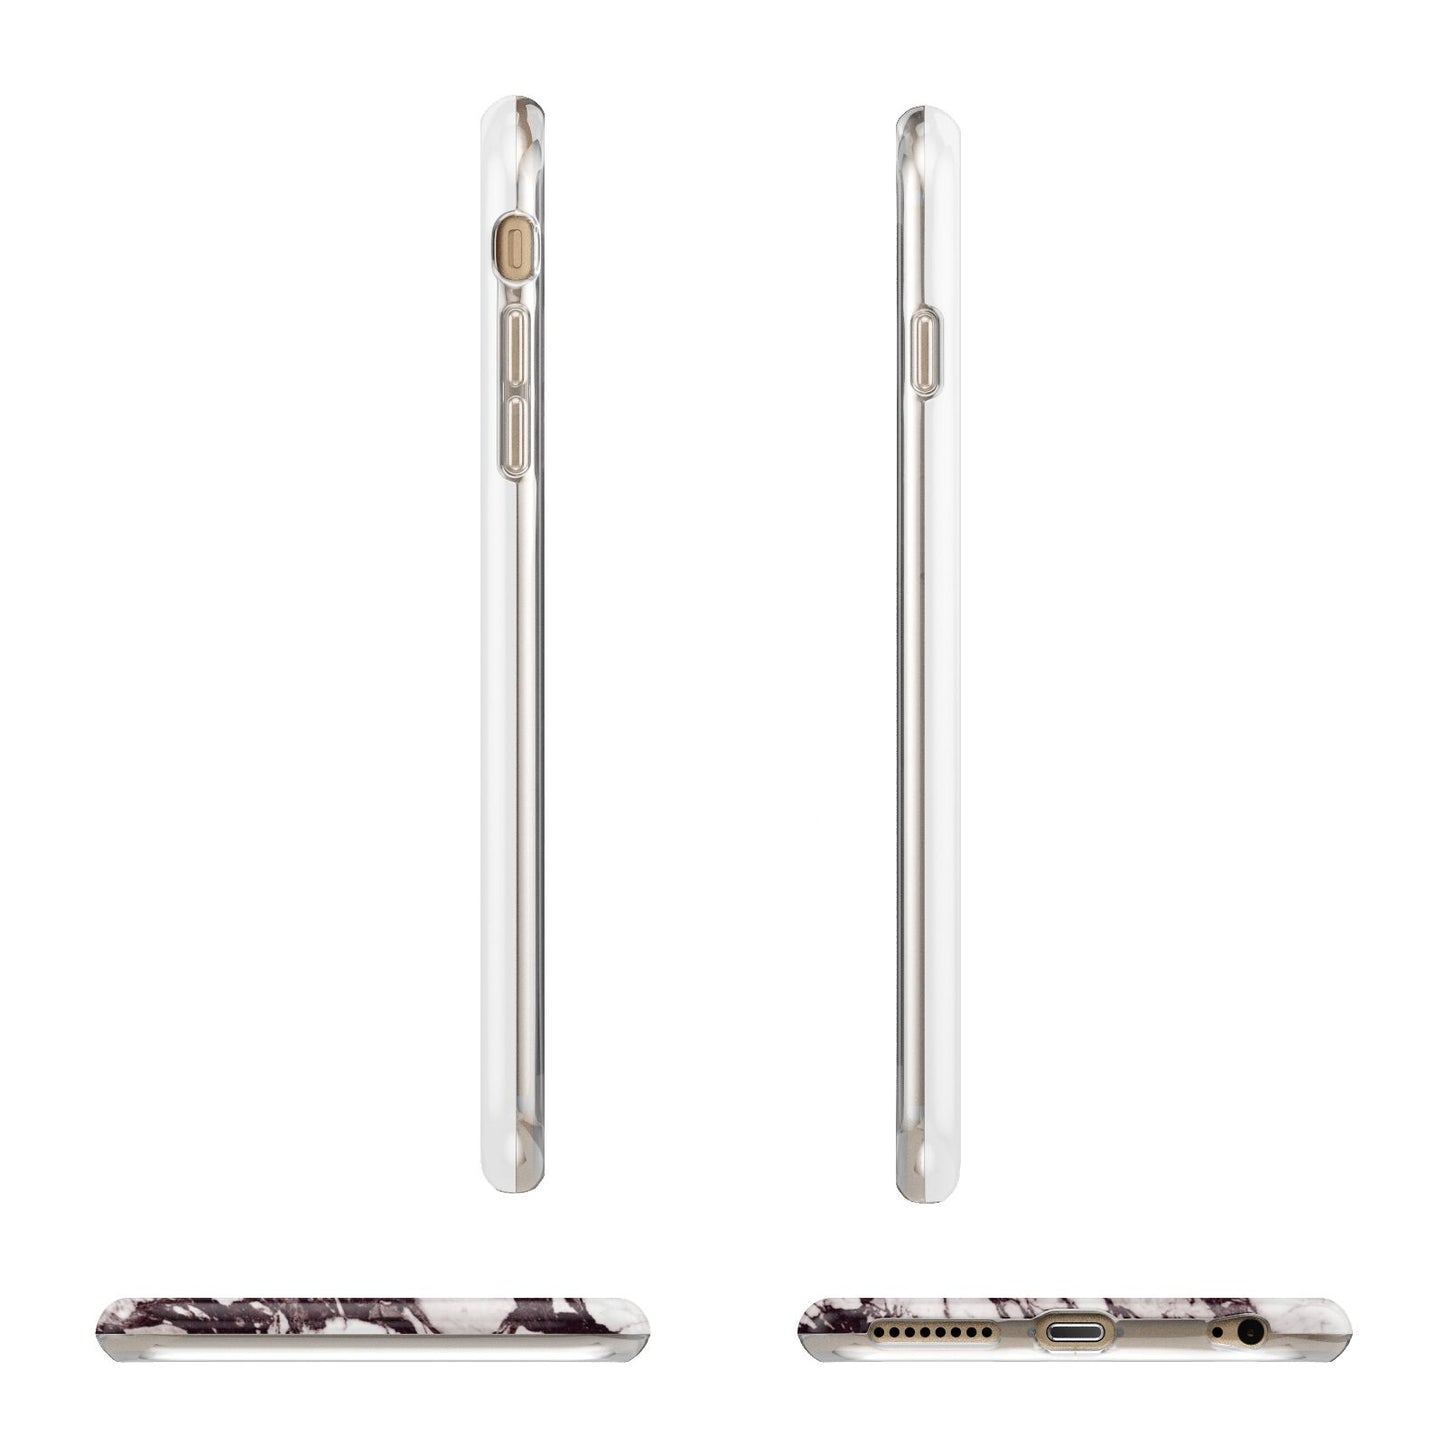 Viola Marble Apple iPhone 6 Plus 3D Wrap Tough Case Alternative Image Angles